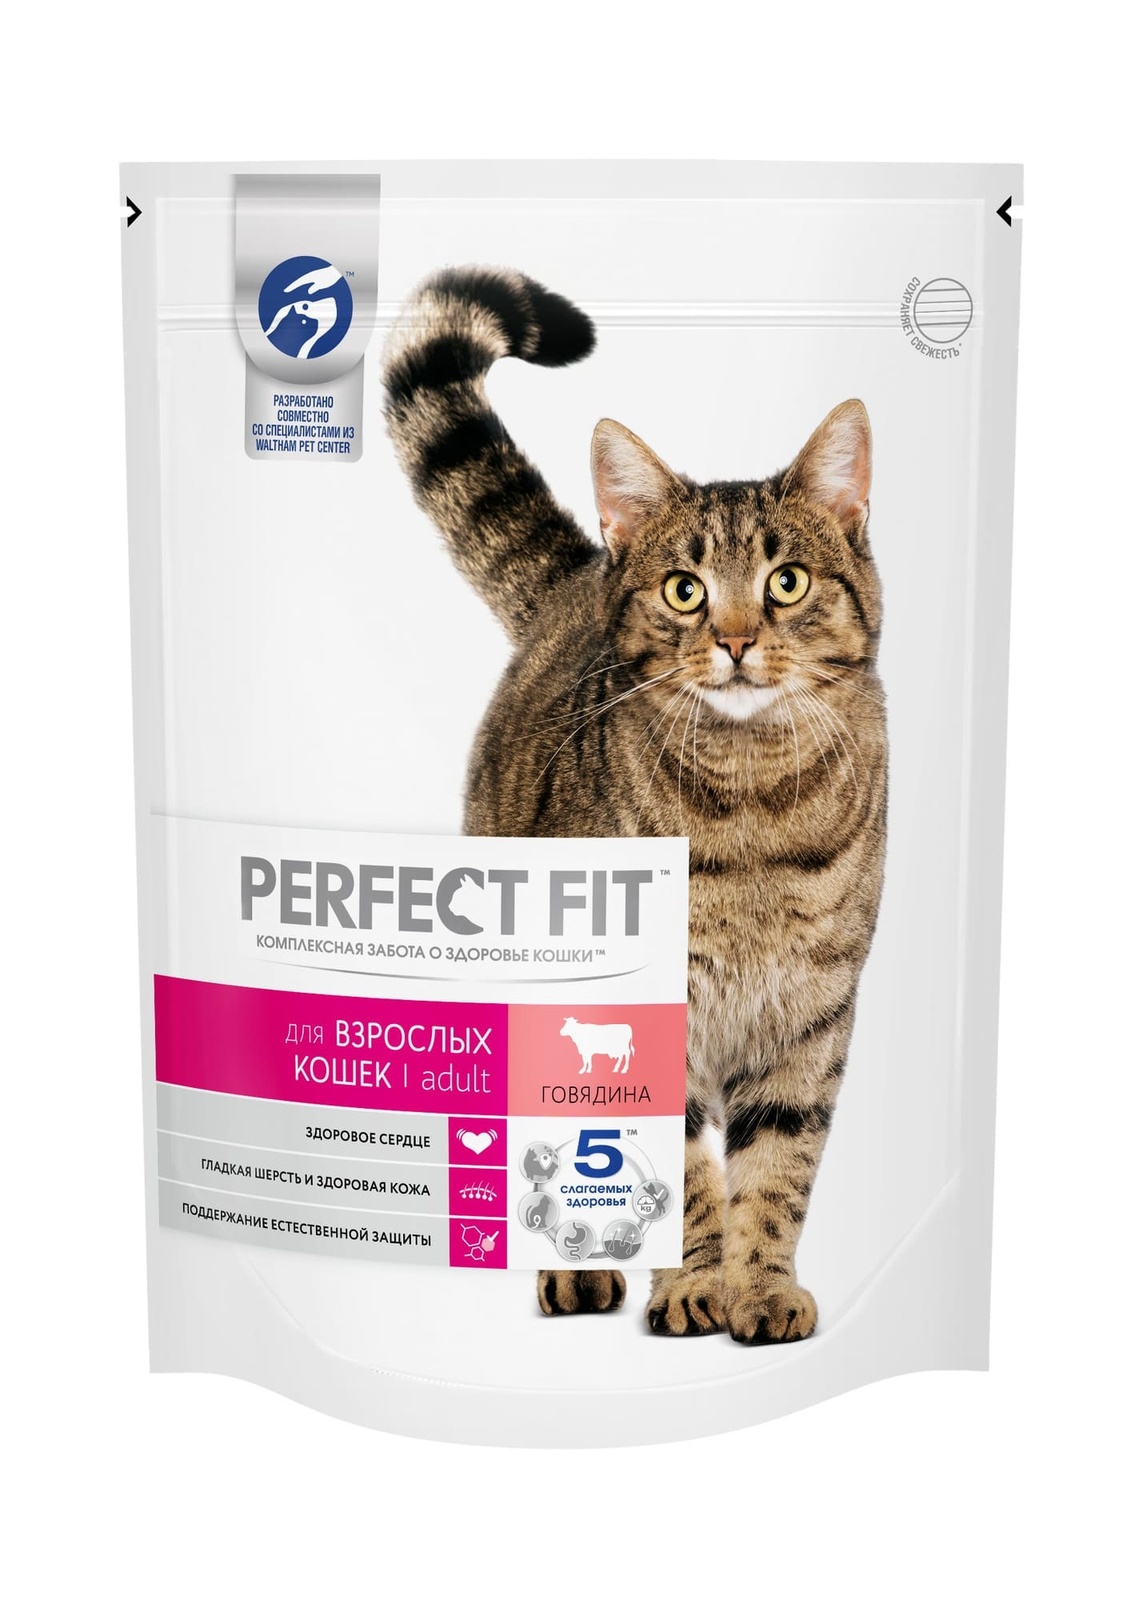 Обзор корма для кошек perfect fit (перфект фит): виды, состав, отзывы